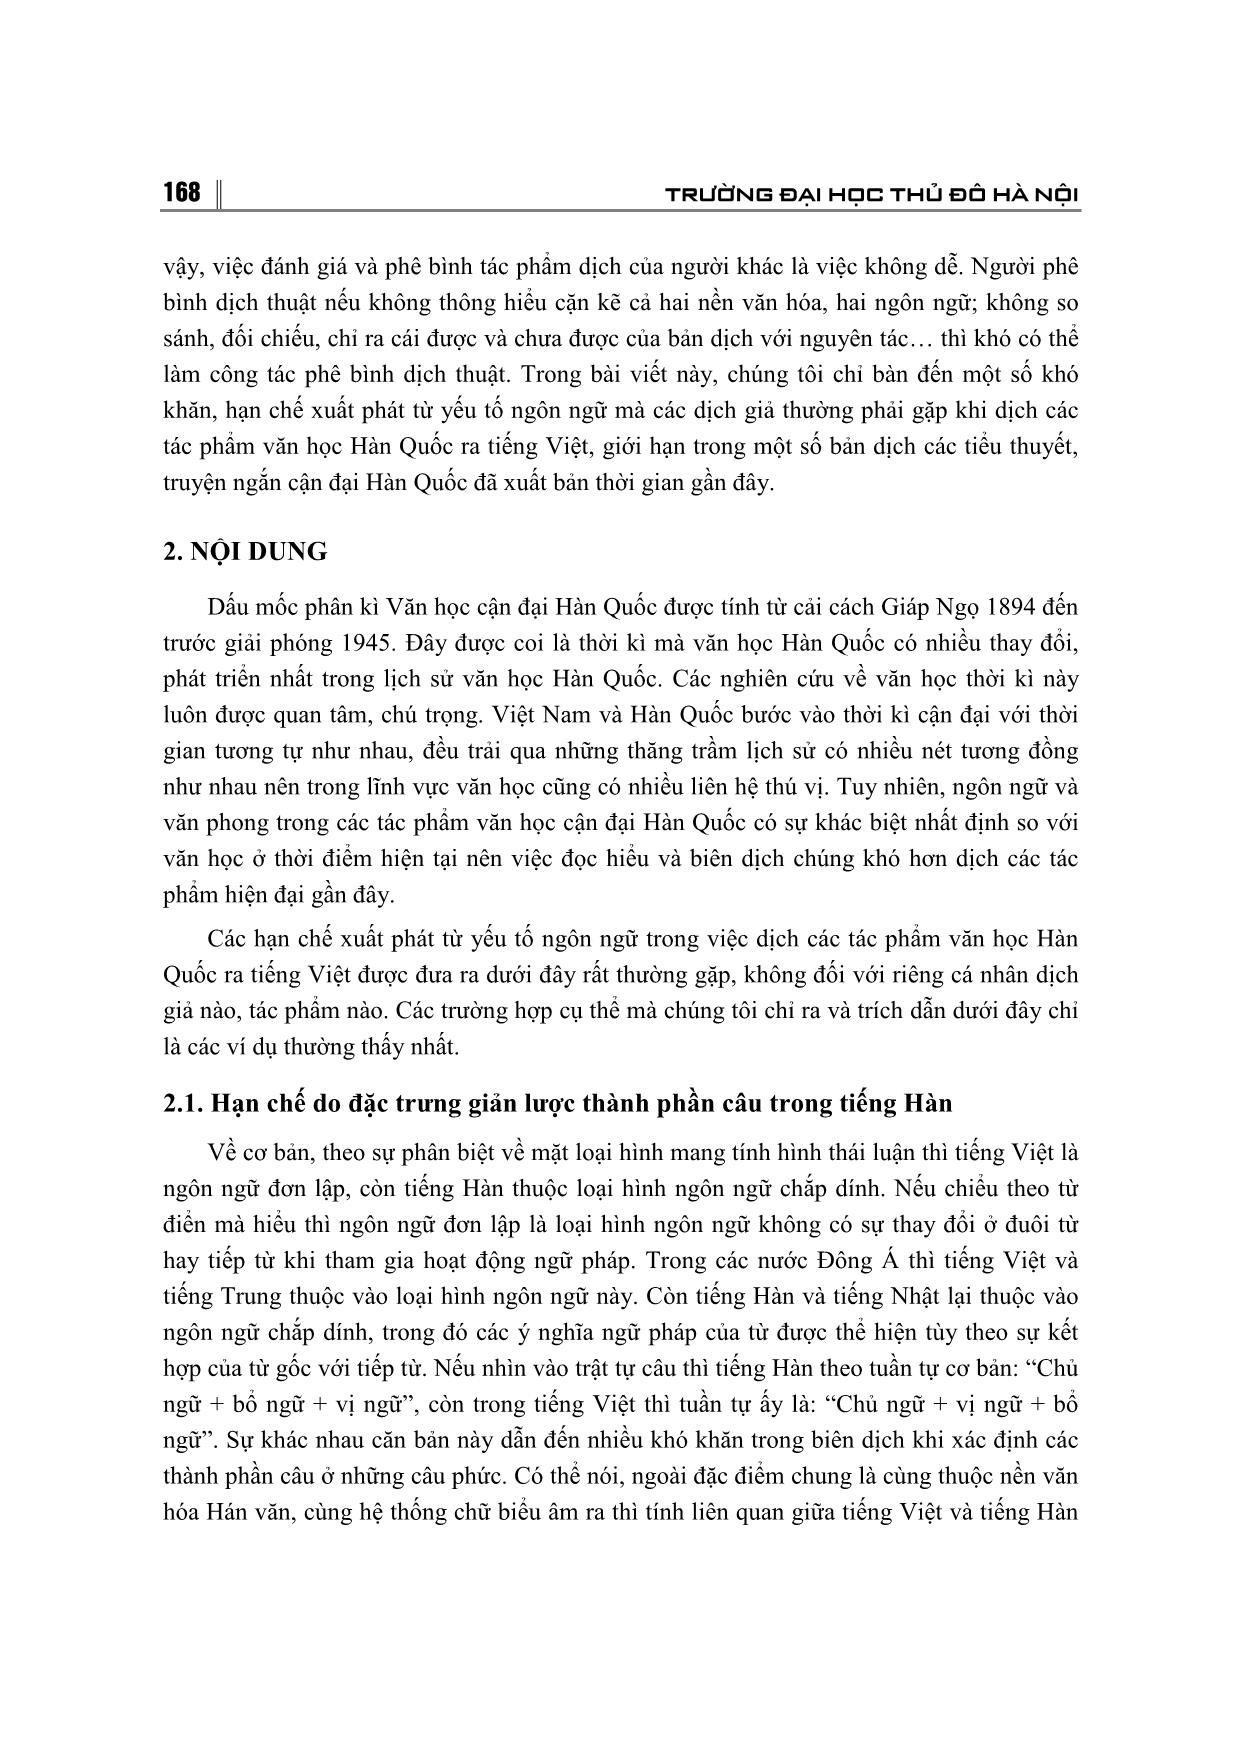 Một số hạn chế phát sinh từ yếu tố ngôn ngữ khi dịch tác phẩm văn học Hàn Quốc sang Tiếng Việt trang 2